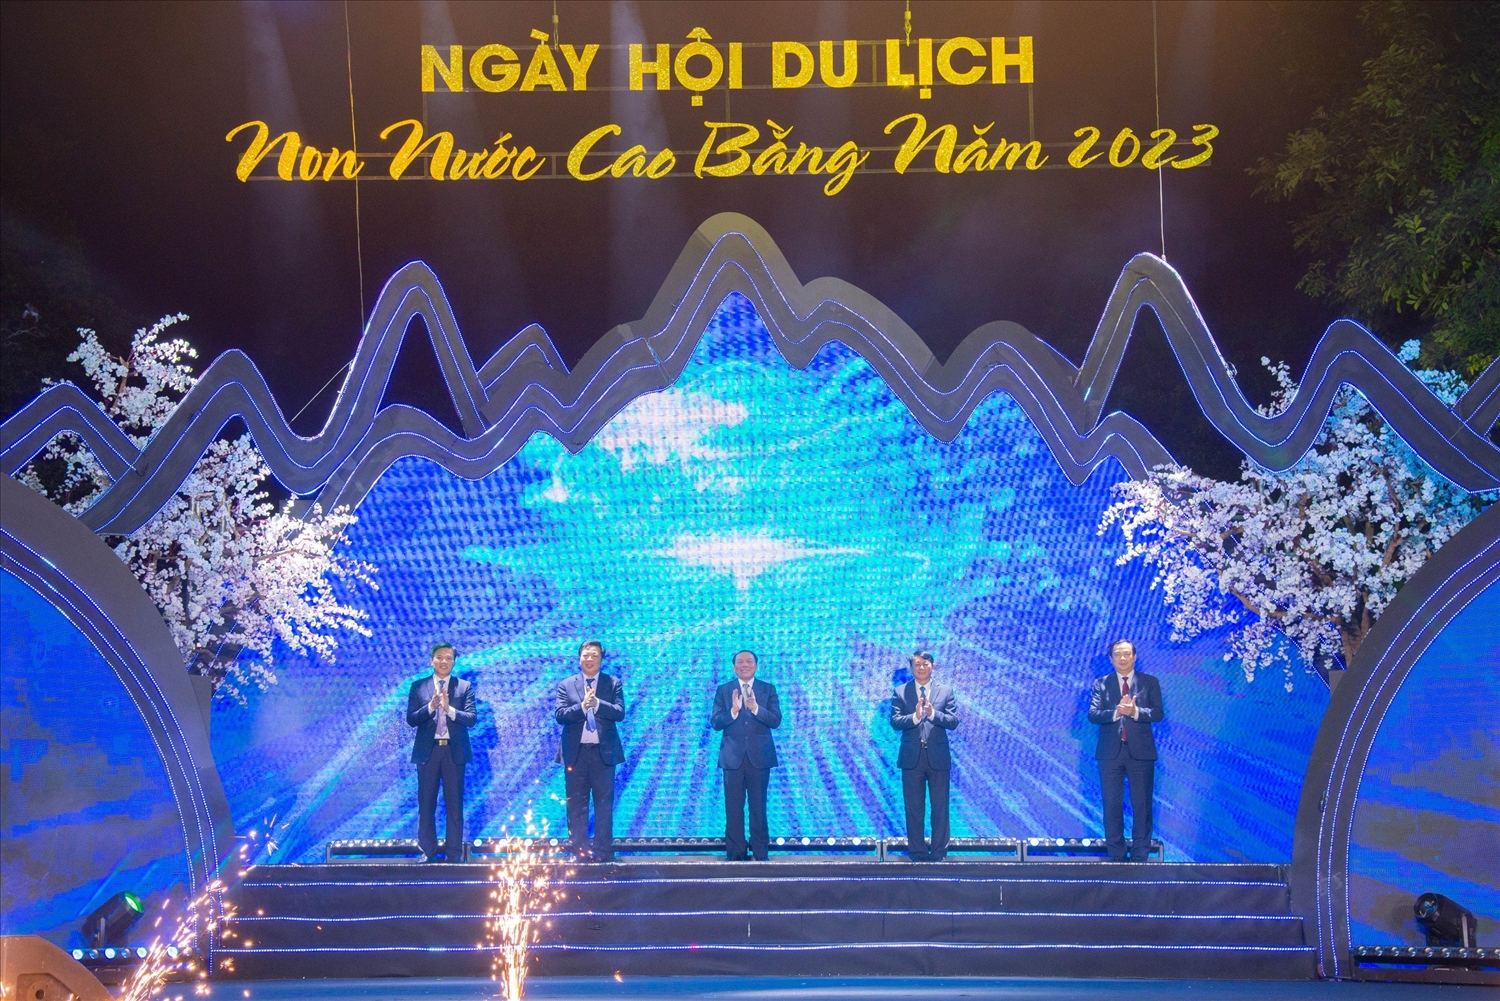 (Tin) Khai mạc Ngày hội du lịch Non nước Cao Bằng năm 2023 tại Hà Nội